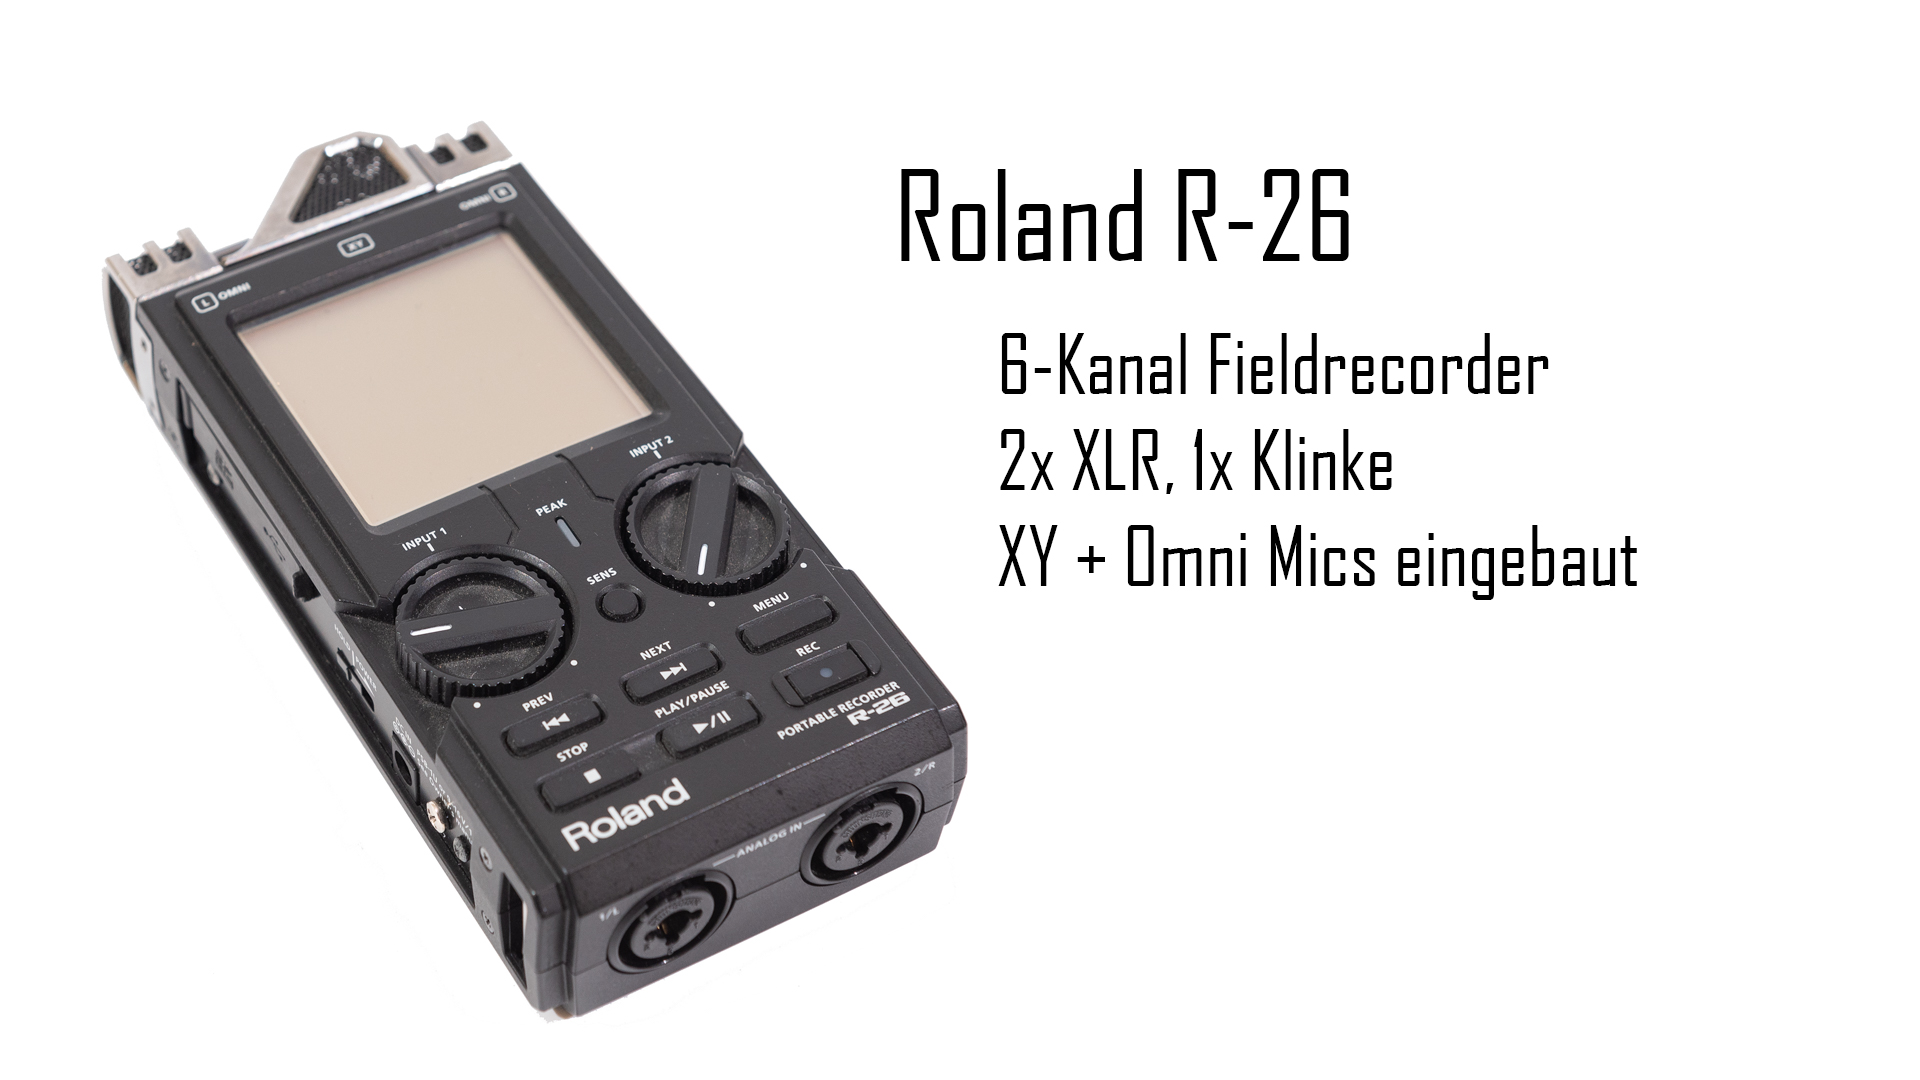 Roland R-26